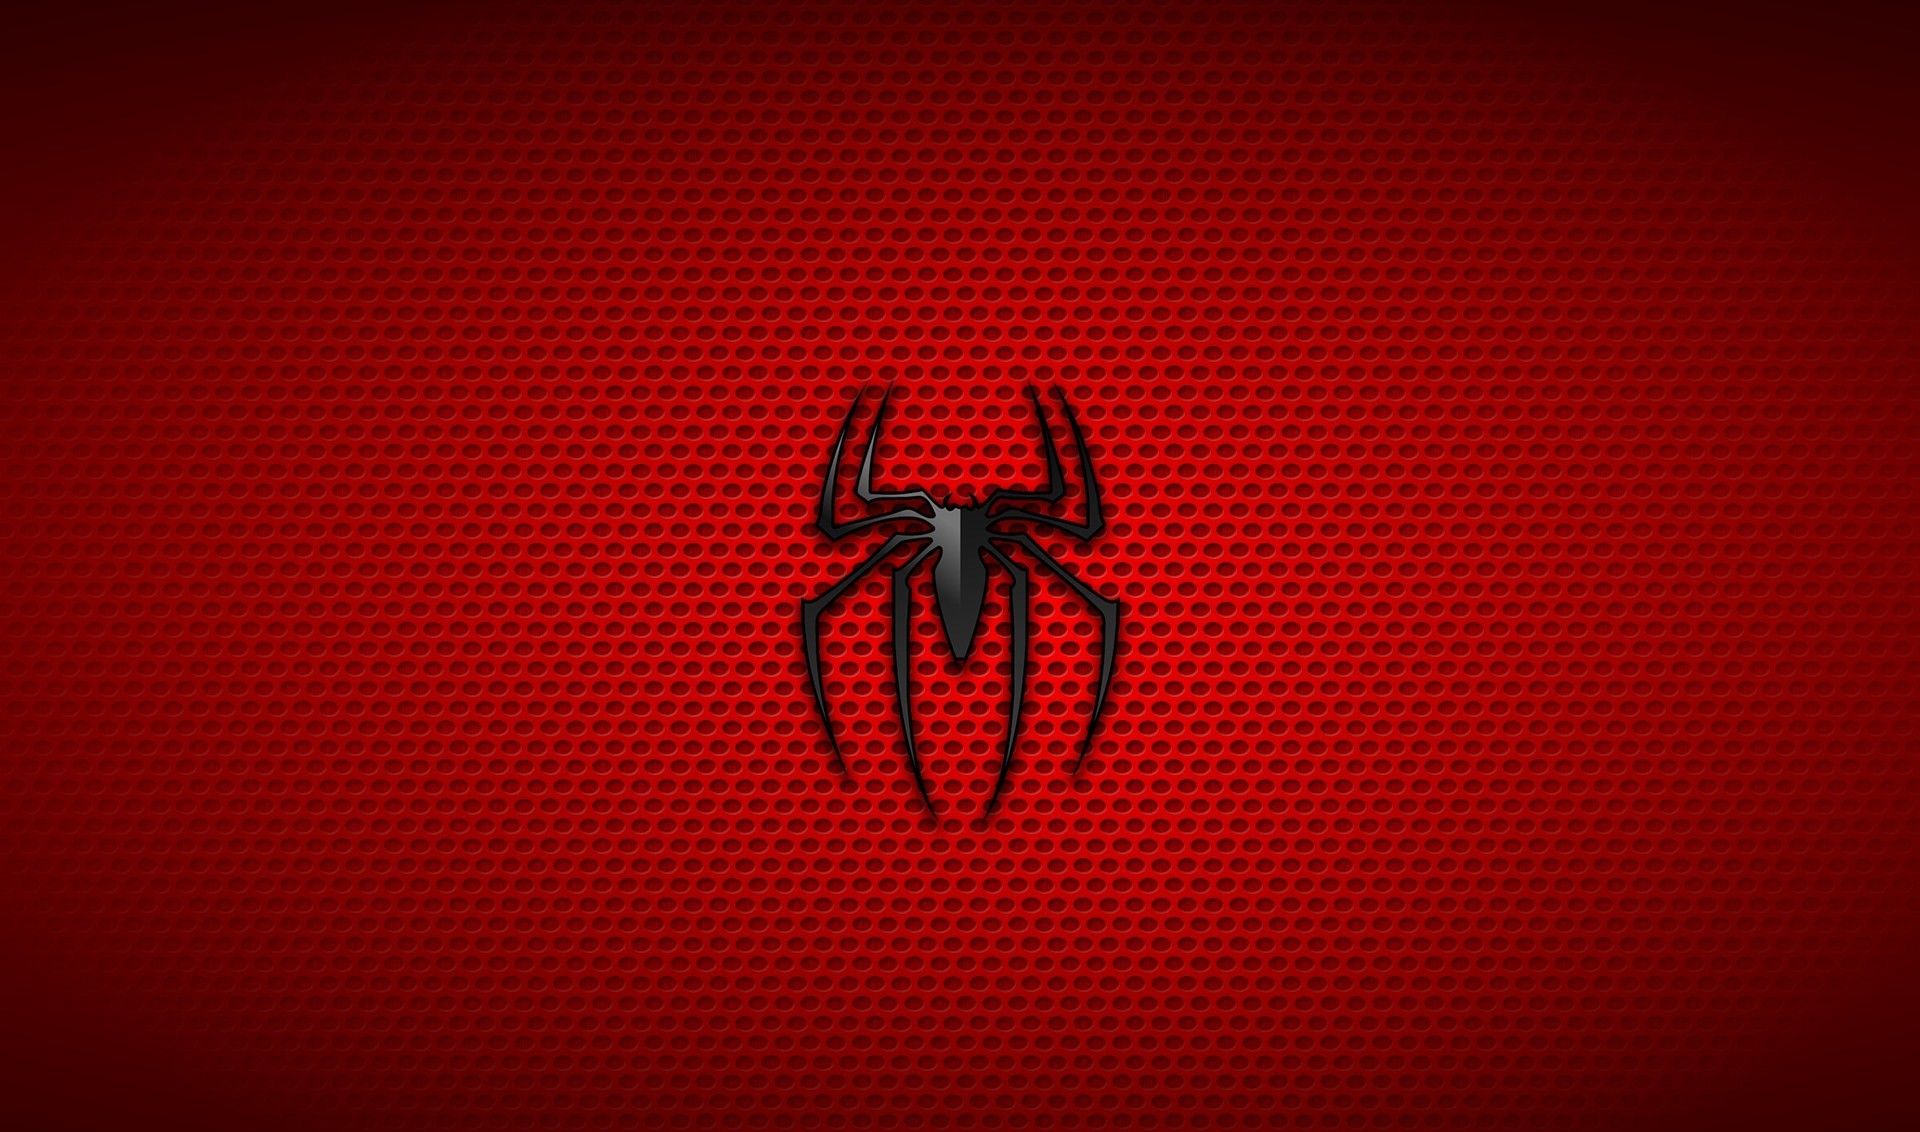 Spider icon wallpaper